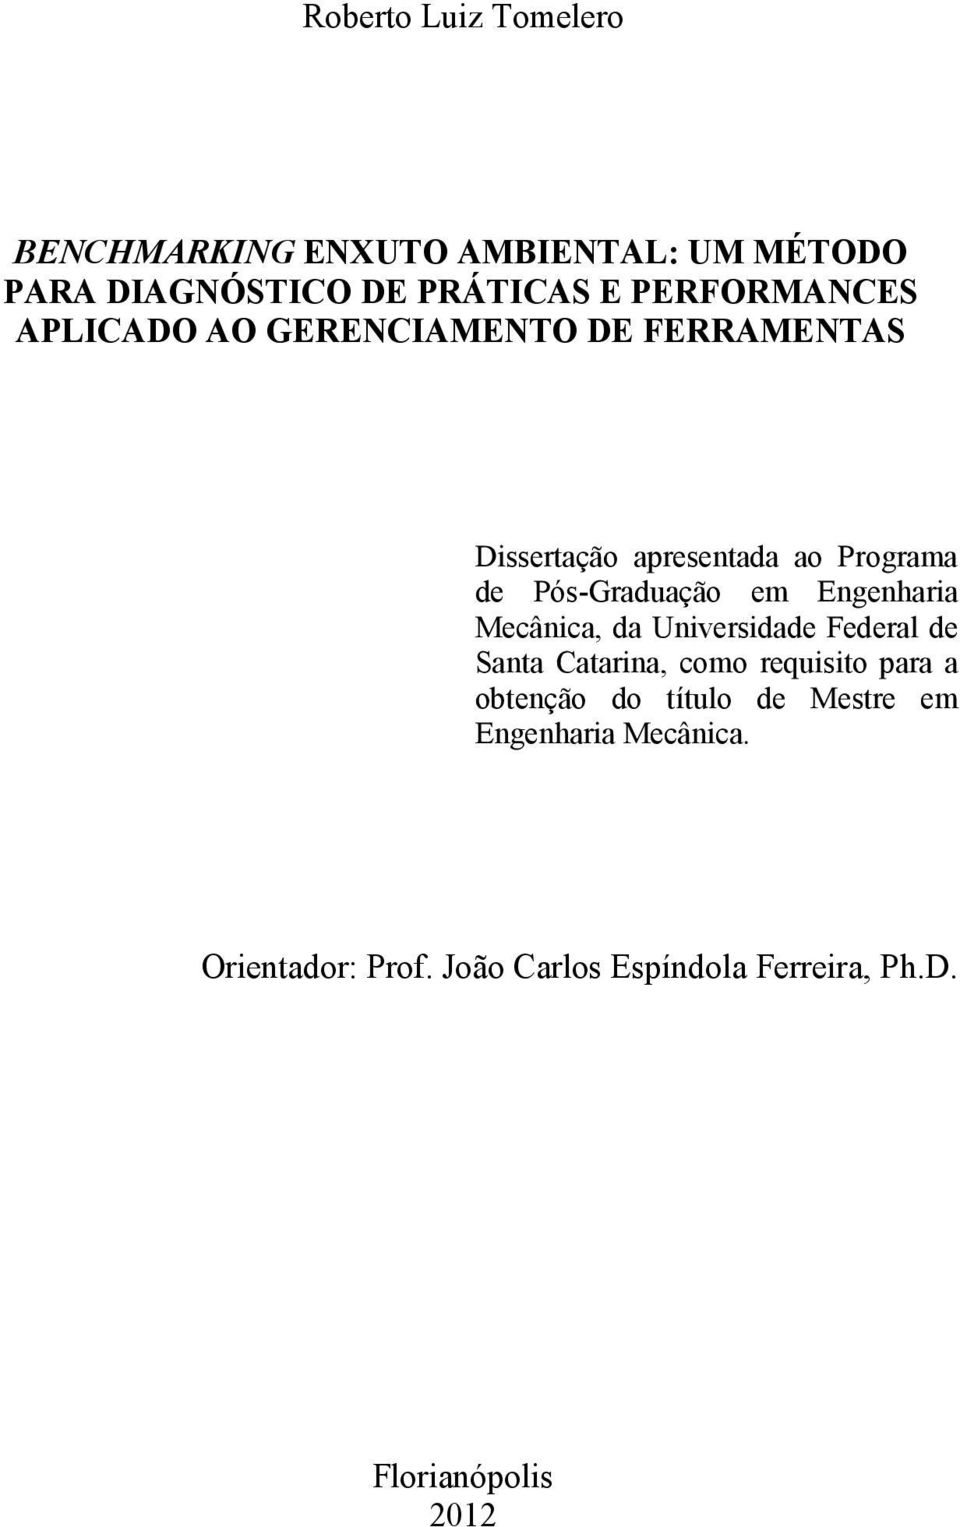 Pós-Graduação em Engenharia Mecânica, da Universidade Federal de Santa Catarina, como requisito para a